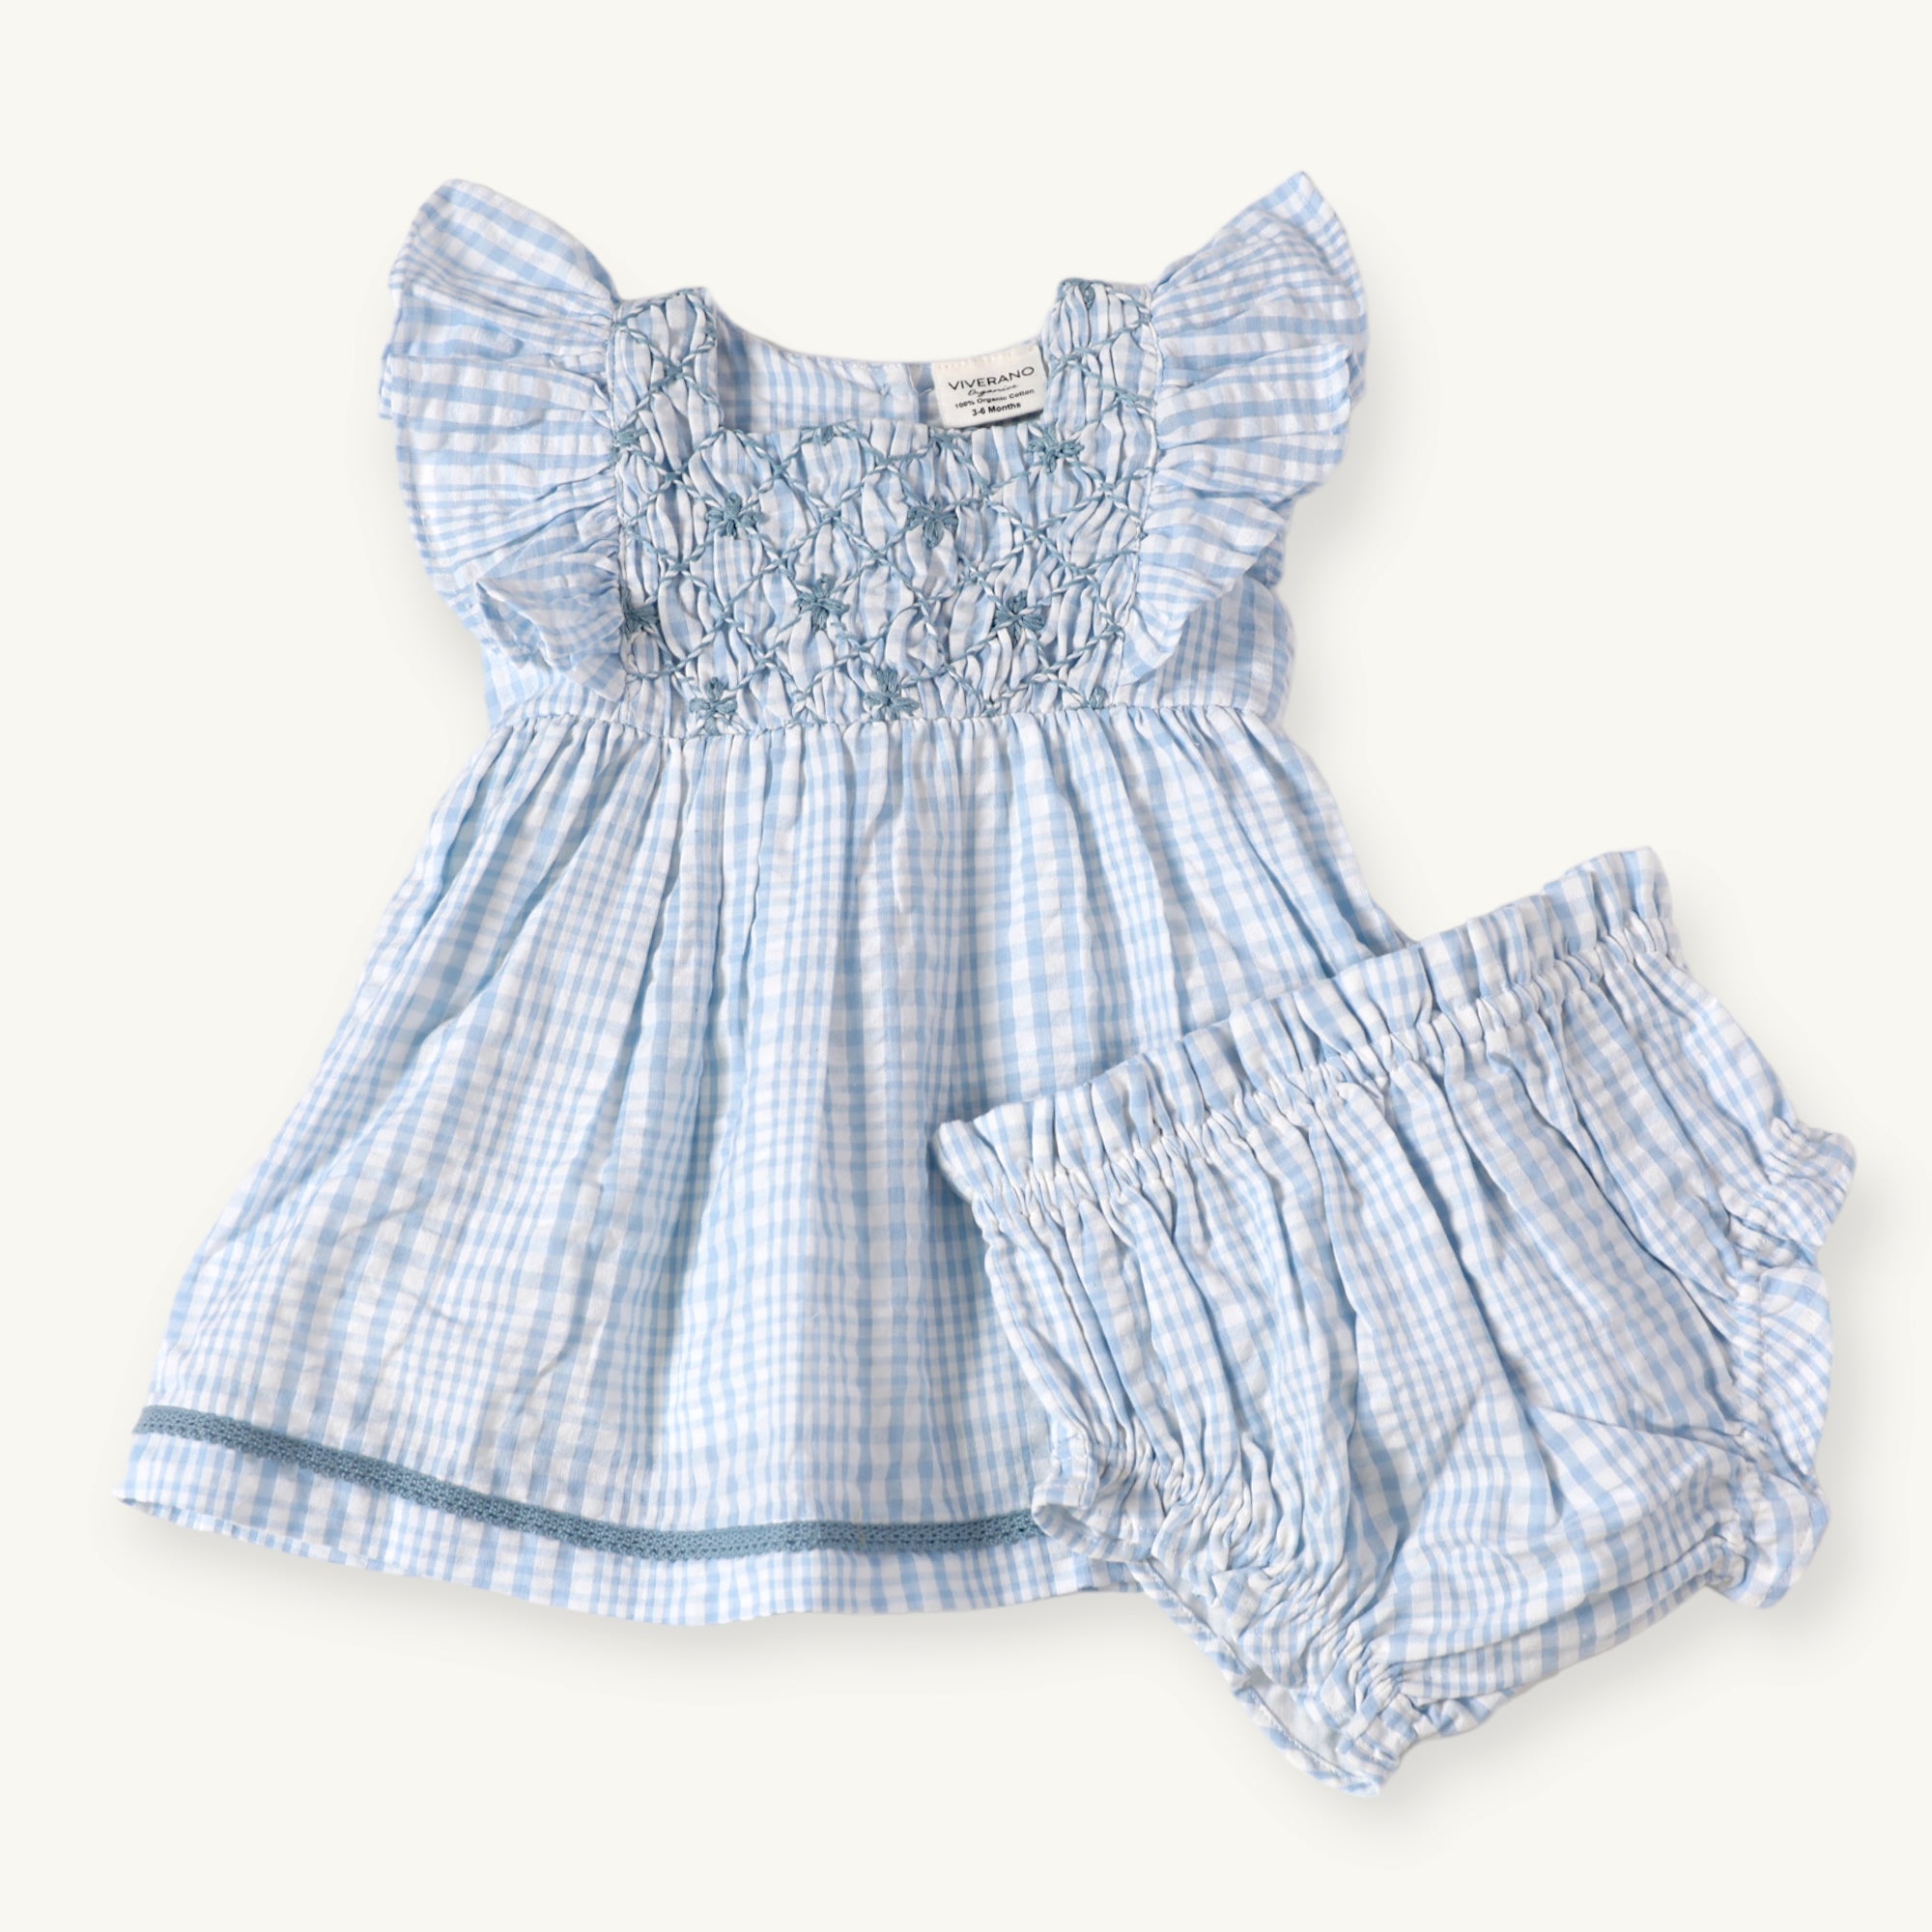 Anna Hand Smocked Seersucker Baby Dress+Bloomer (Organic Cotton)